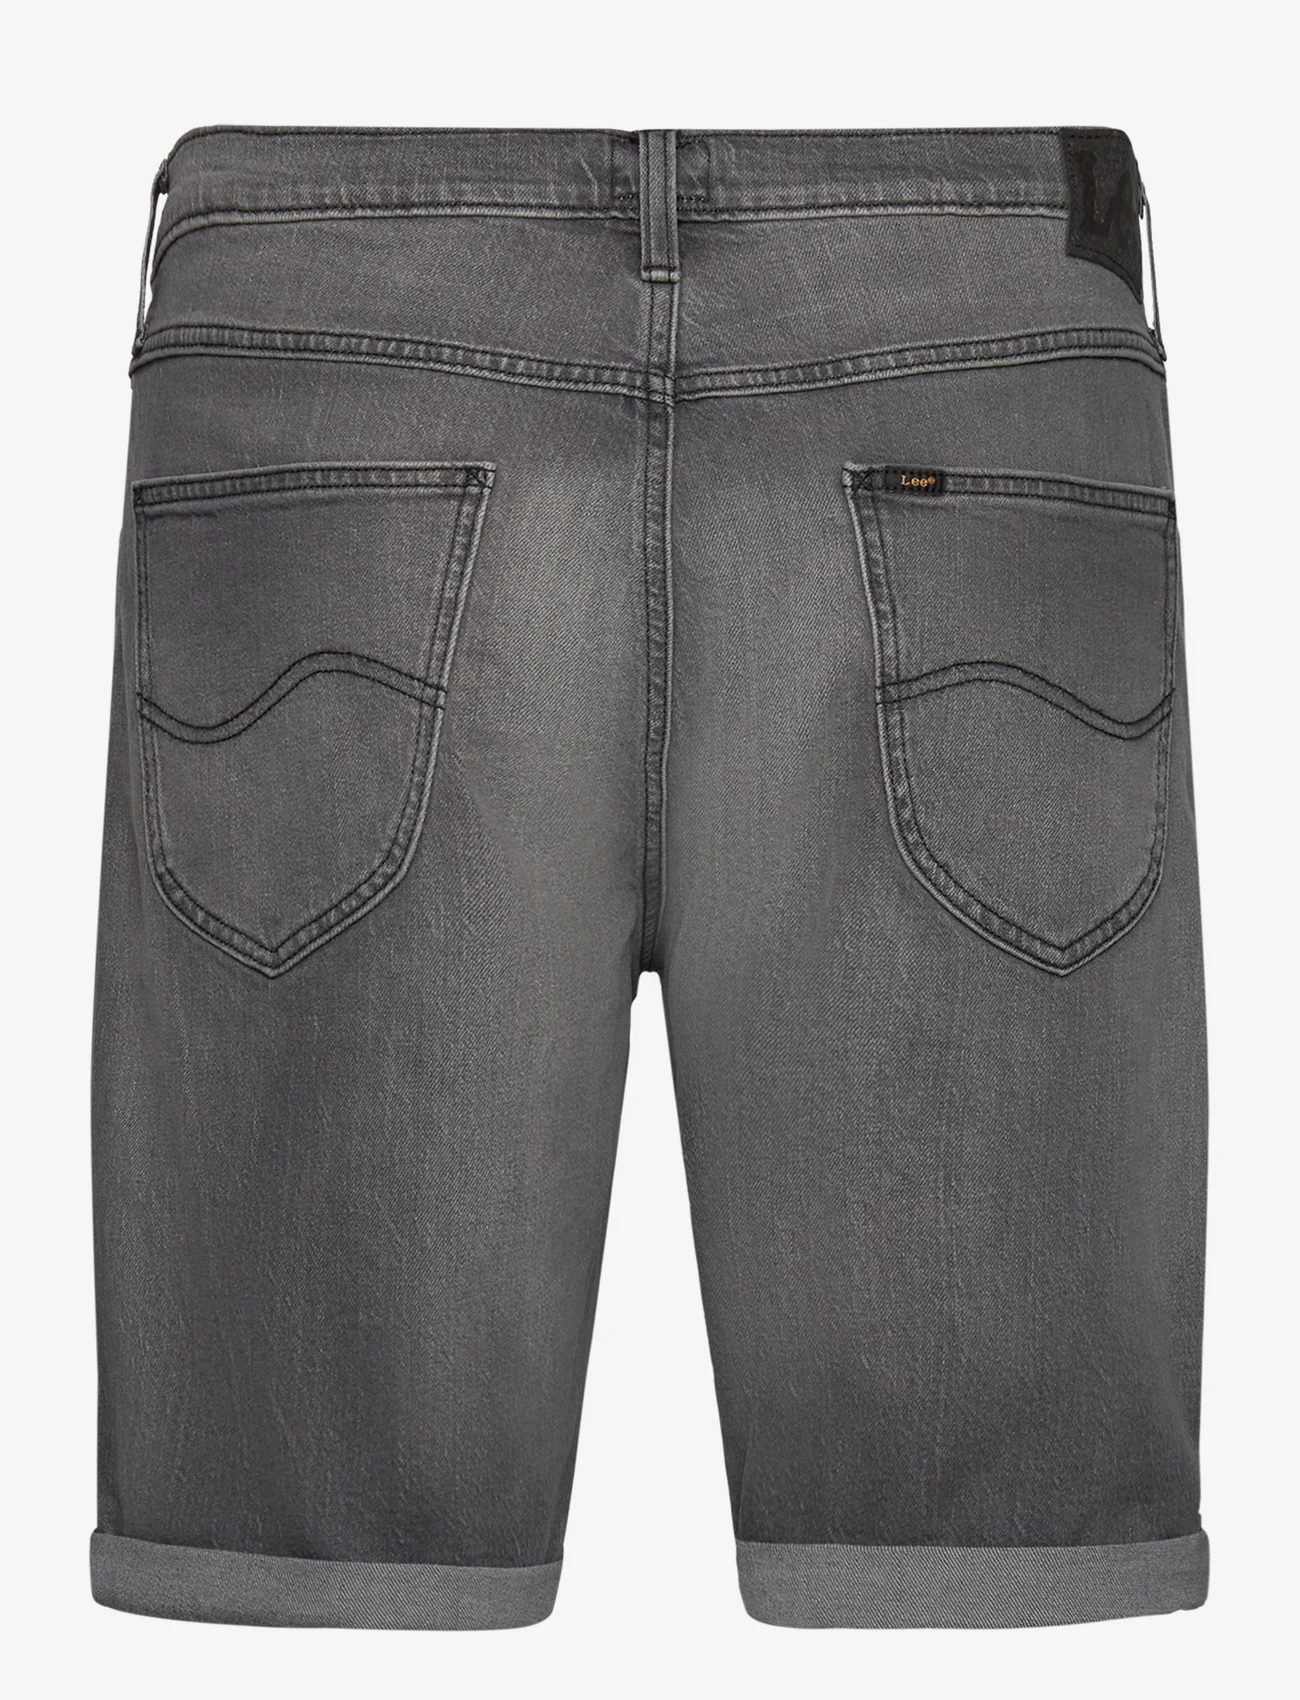 Lee Jeans - 5 POCKET SHORT - farkkushortsit - washed grey - 1